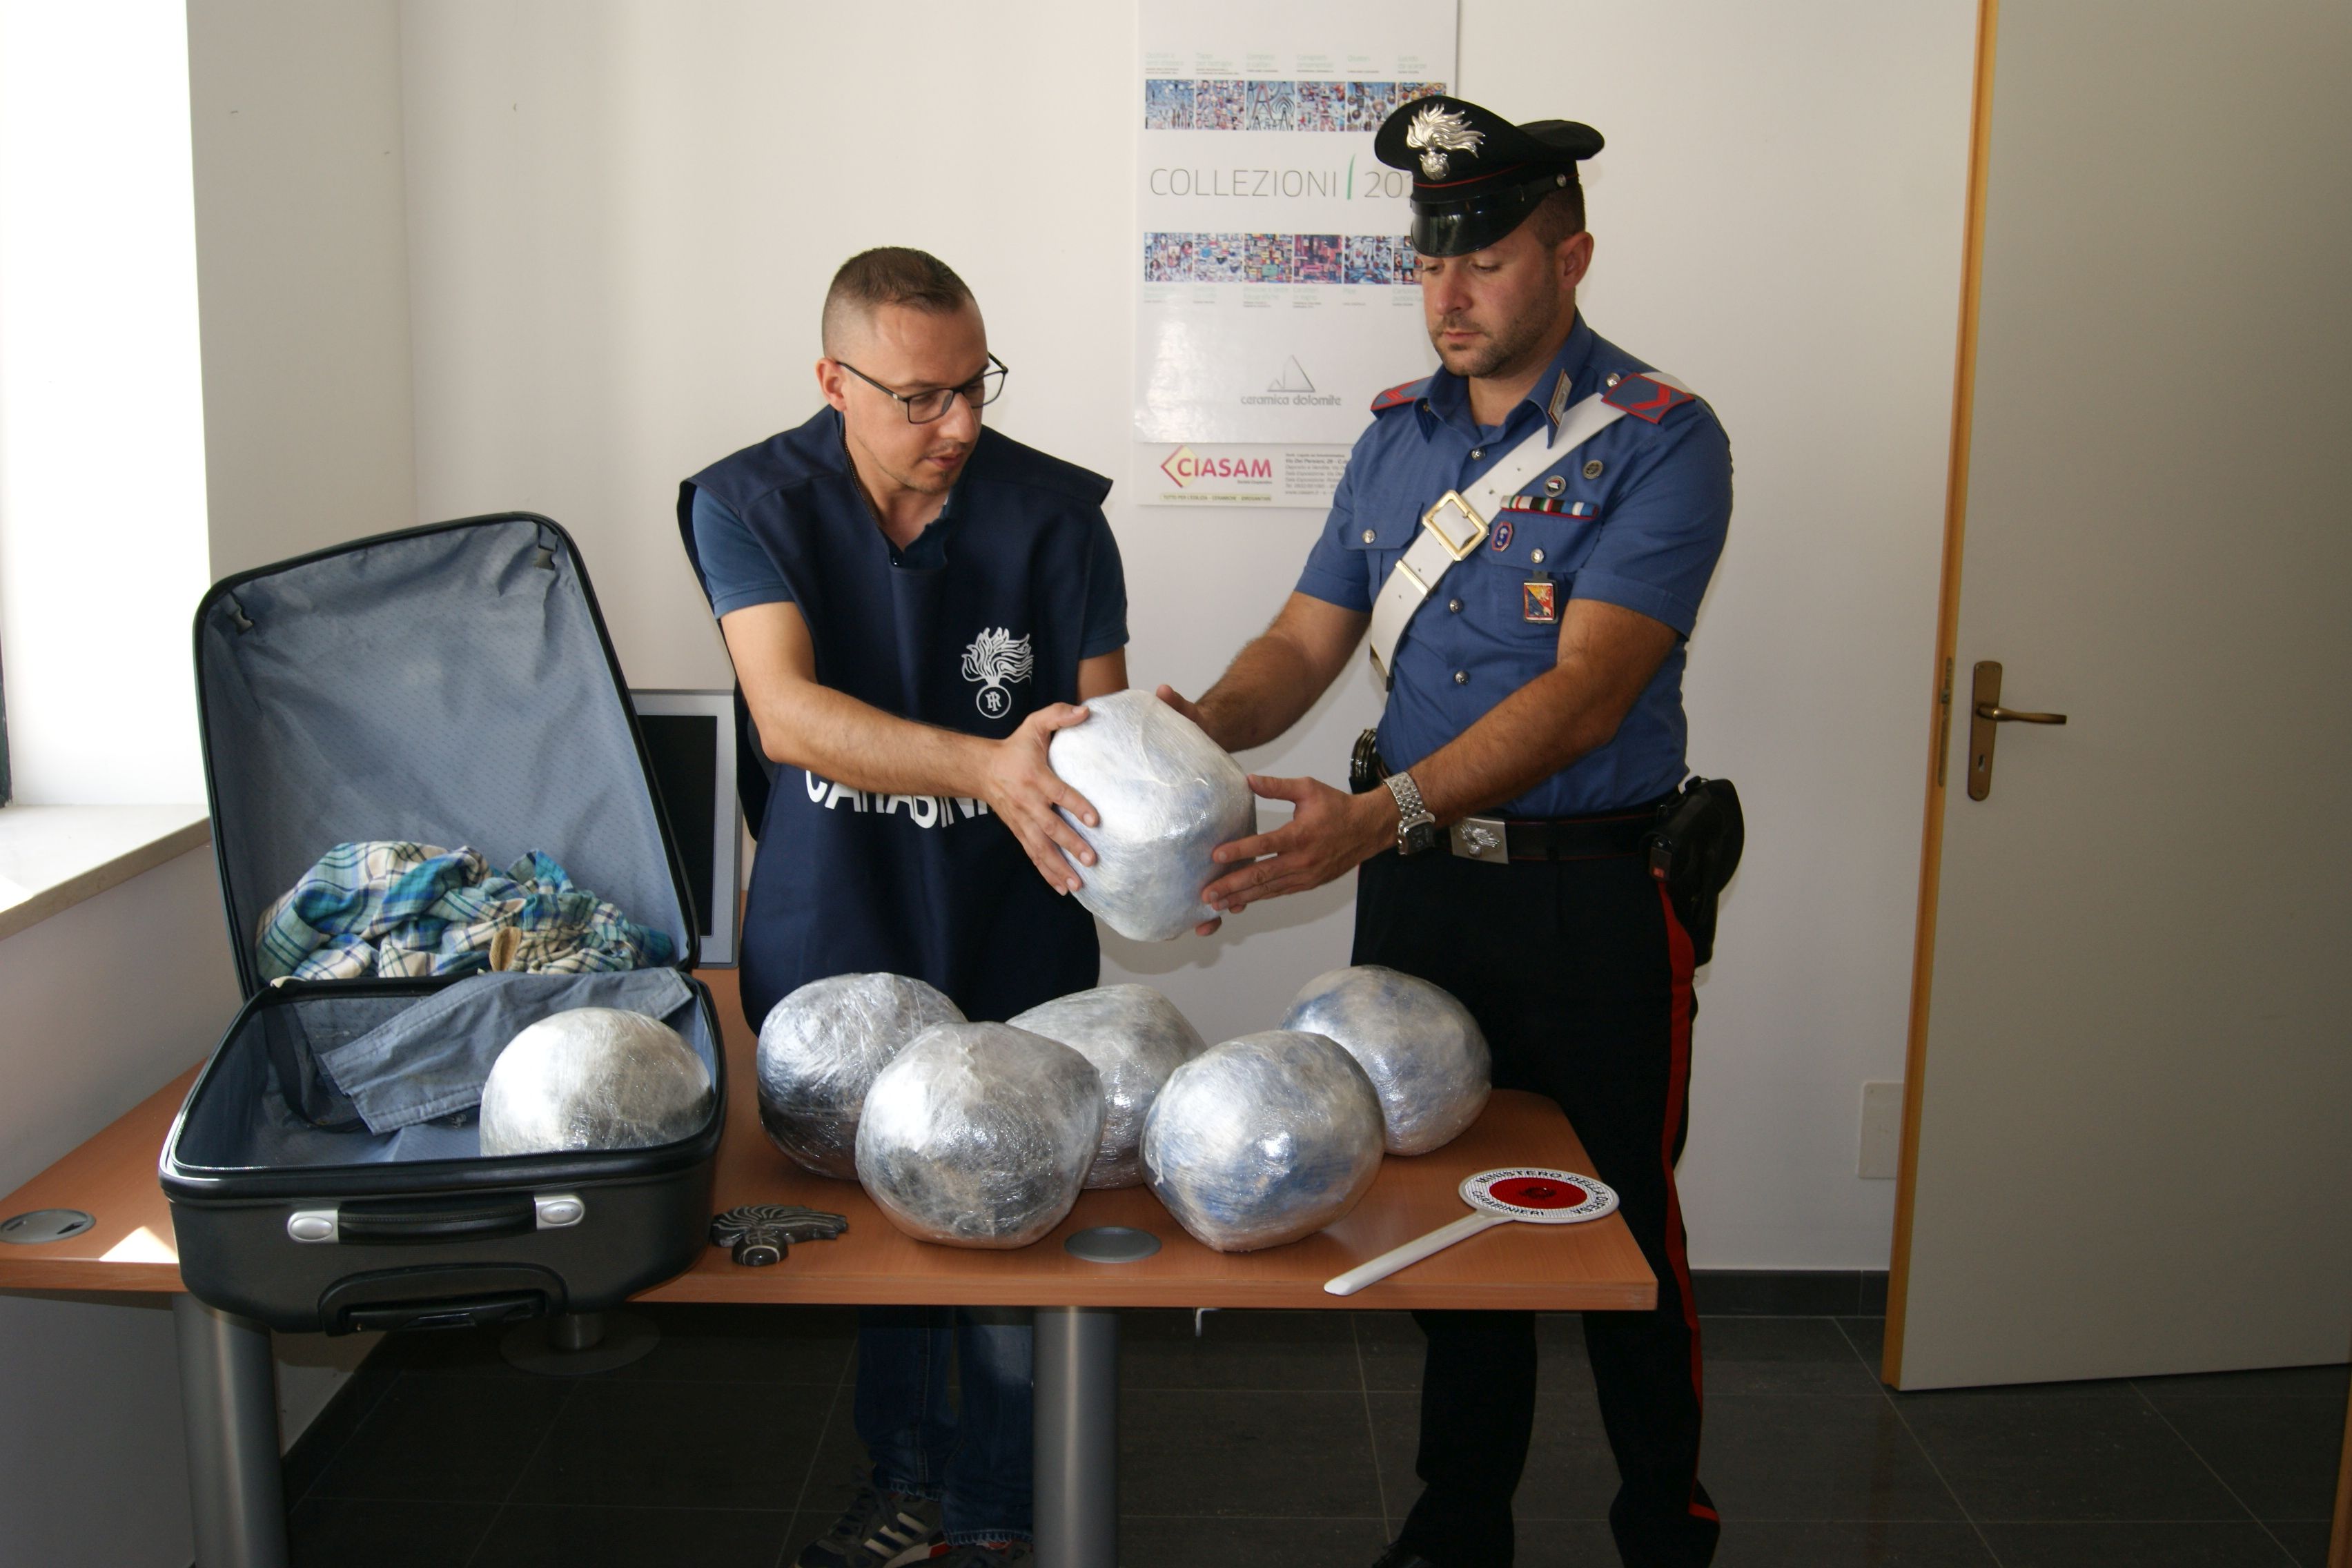  Scicli – Sette chili di droga nel borsone da viaggio: arrestati due giovani albanesi